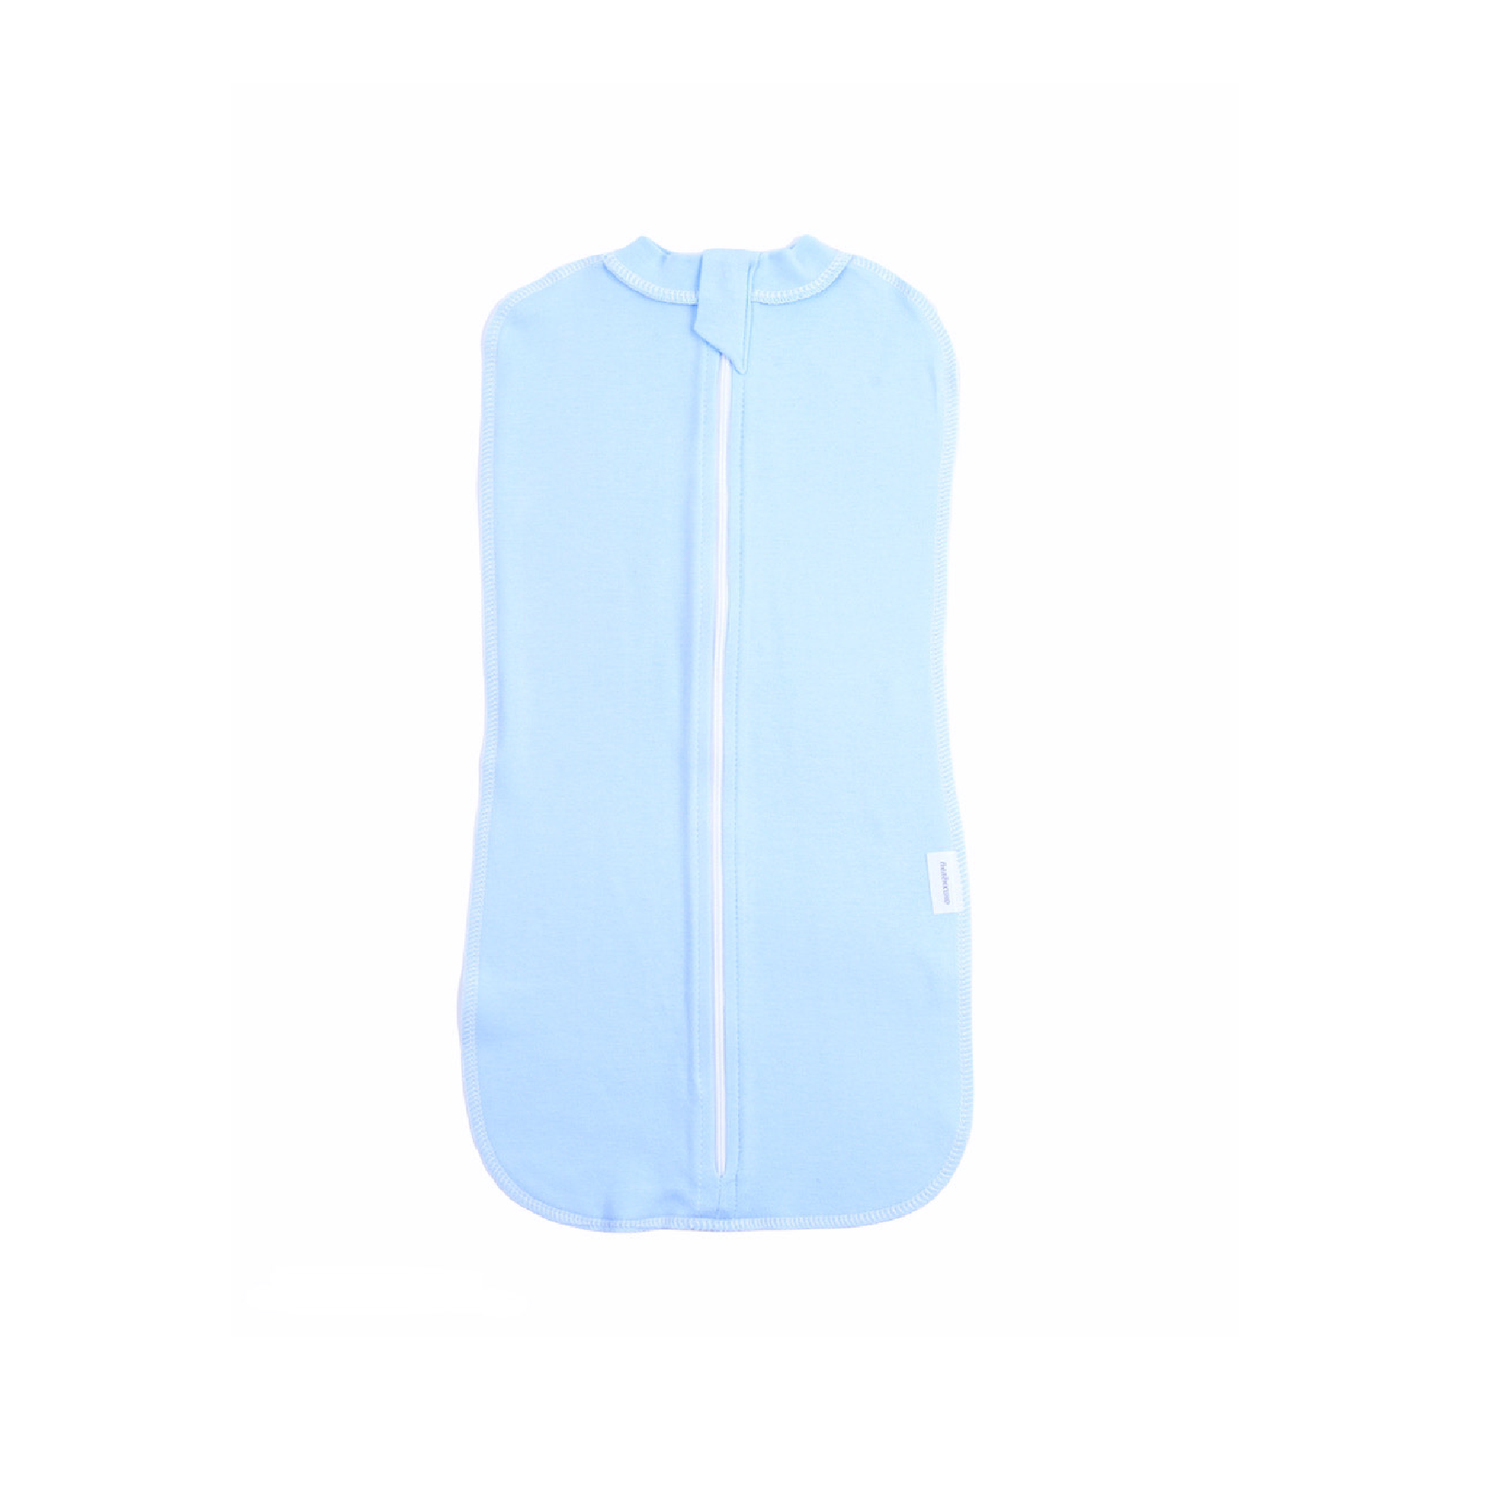 Конверт пеленальный Пелёнкино спальный конверт Базовый 62р 1-3 мес голубой - фото 1